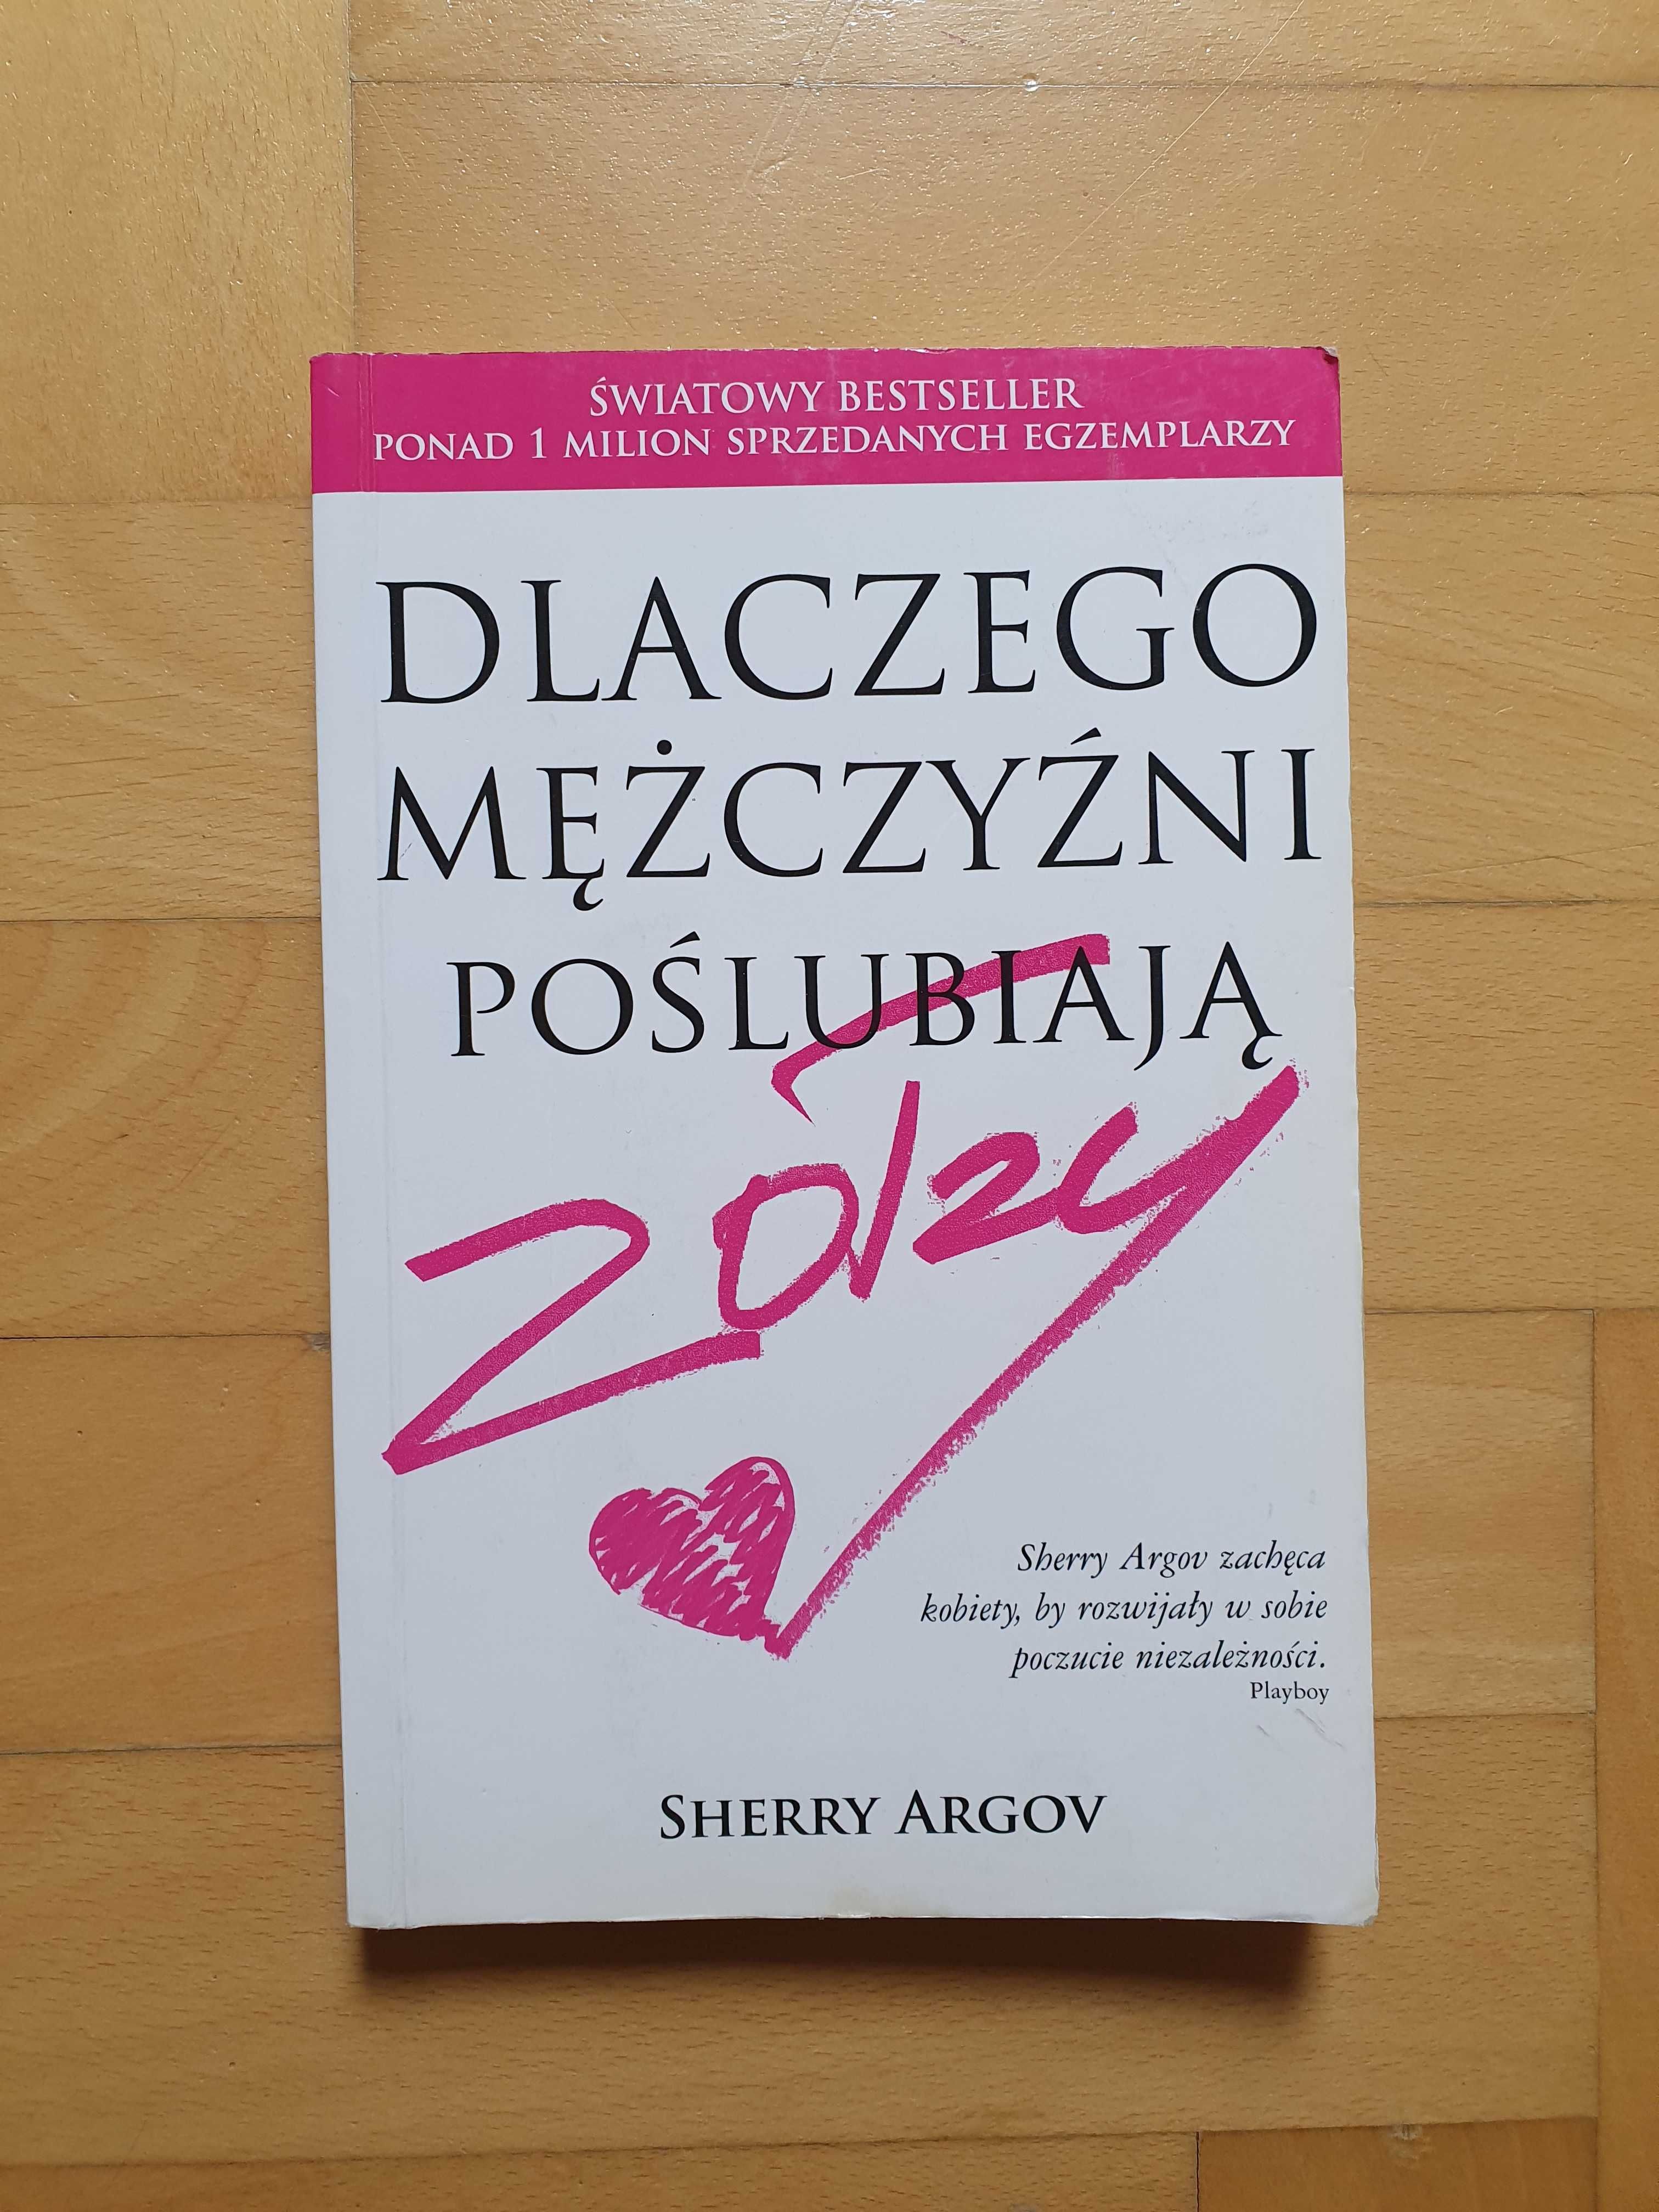 Książka "Dlaczego mężczyźni poślubiają zołzy" S. Argov